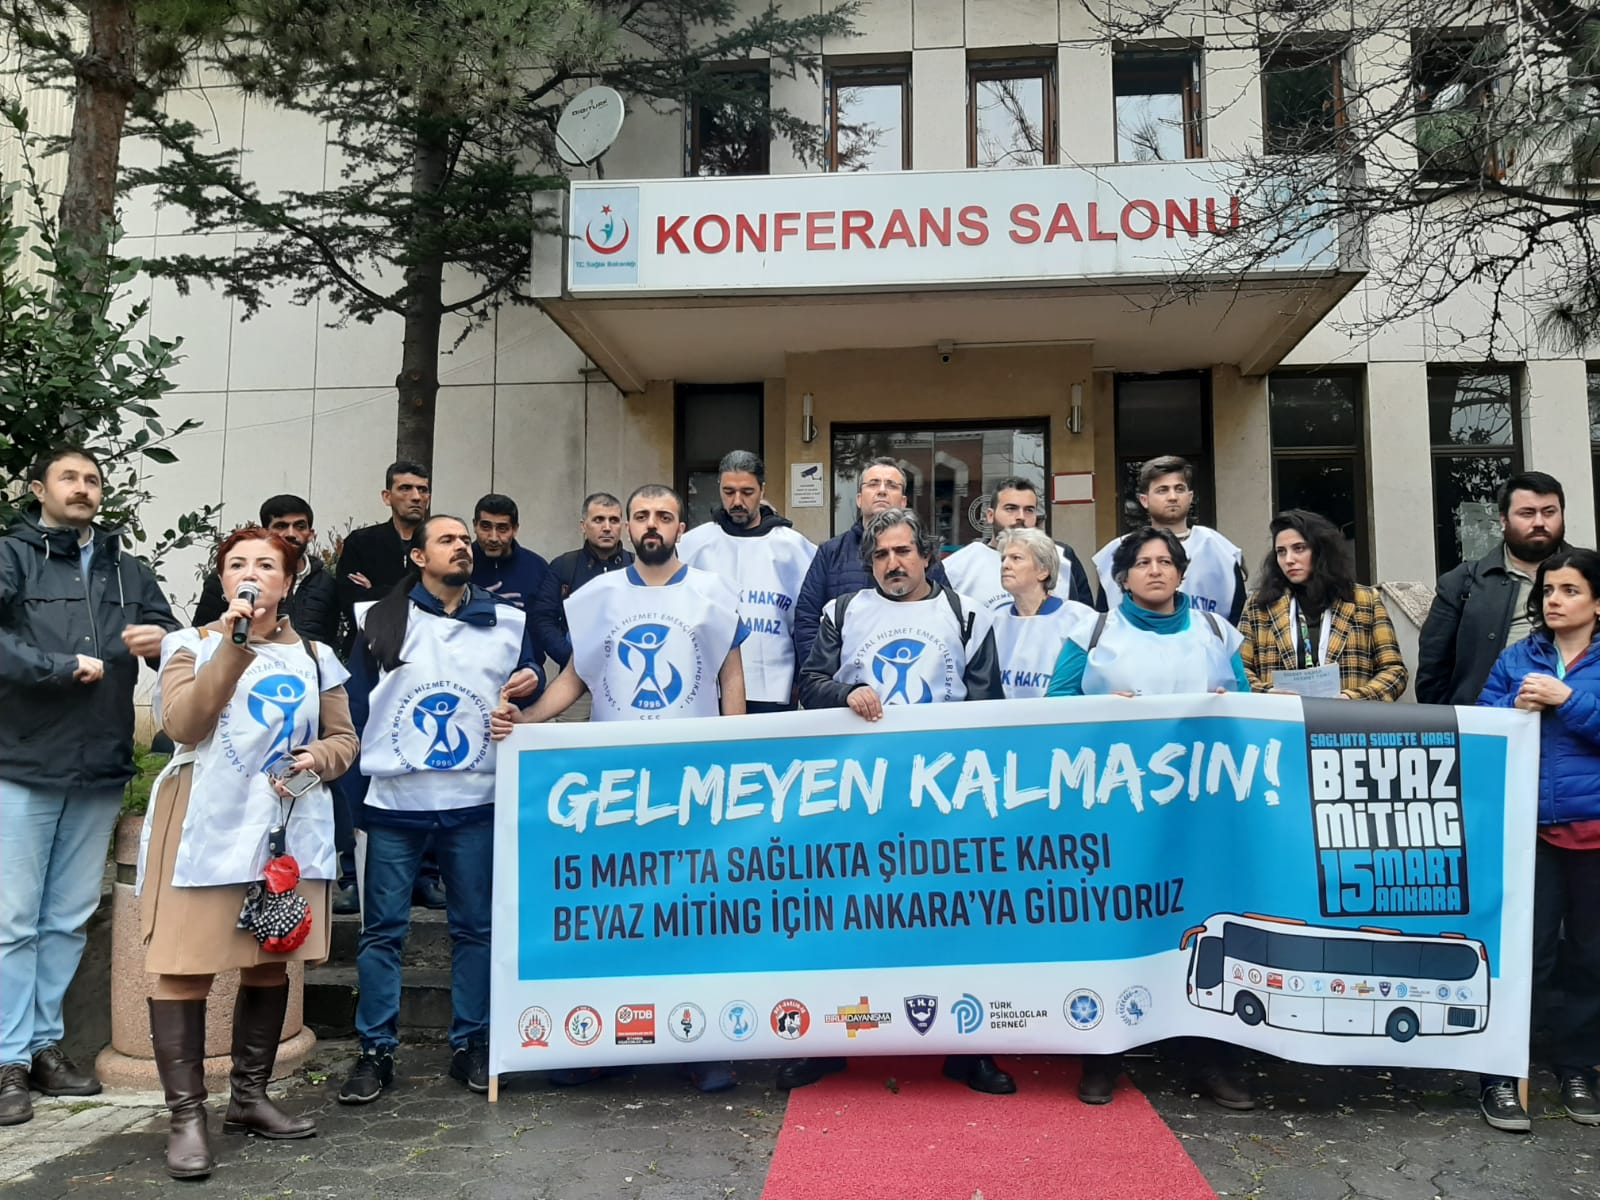 İstanbul Sağlık Örgütleri: 15 Mart’ta Sağlıkta Şiddete Karşı Beyaz Miting İçin Ankara’ya Gidiyoruz! Gelmeyen Kalmasın!